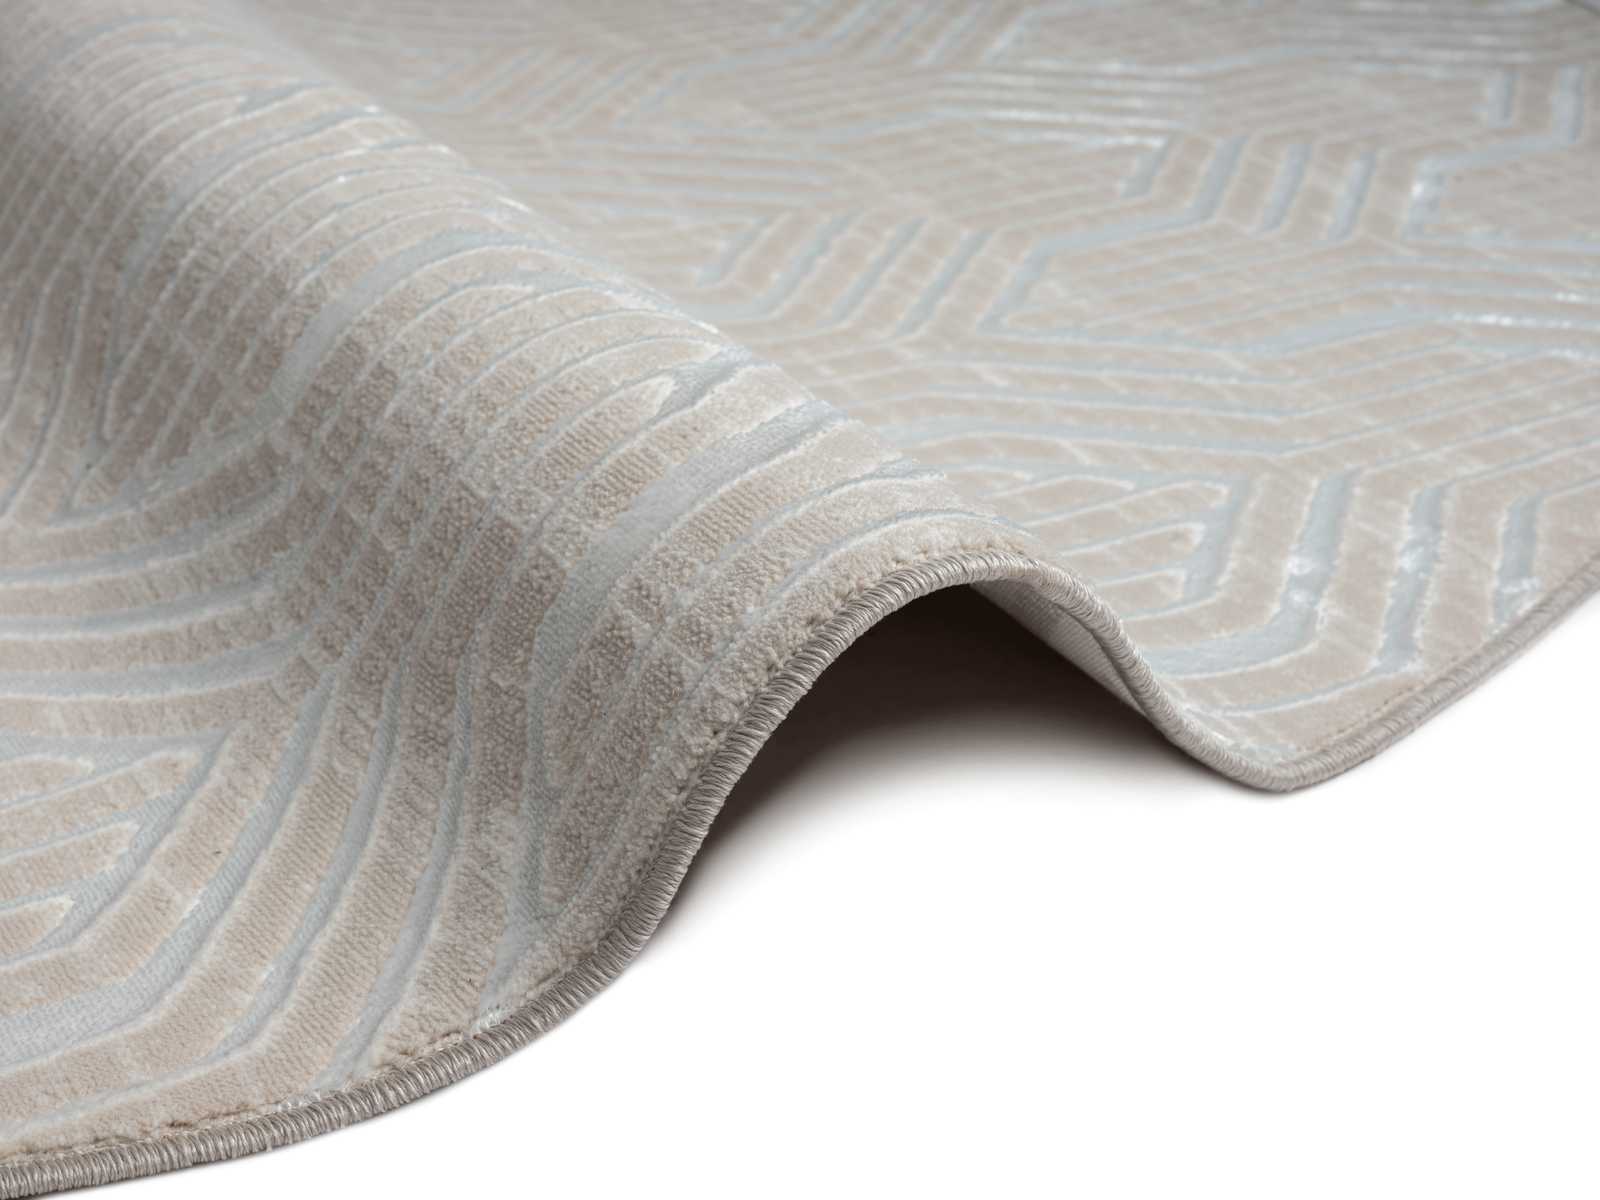             Zachtpolig tapijt in crème - 150 x 80 cm
        